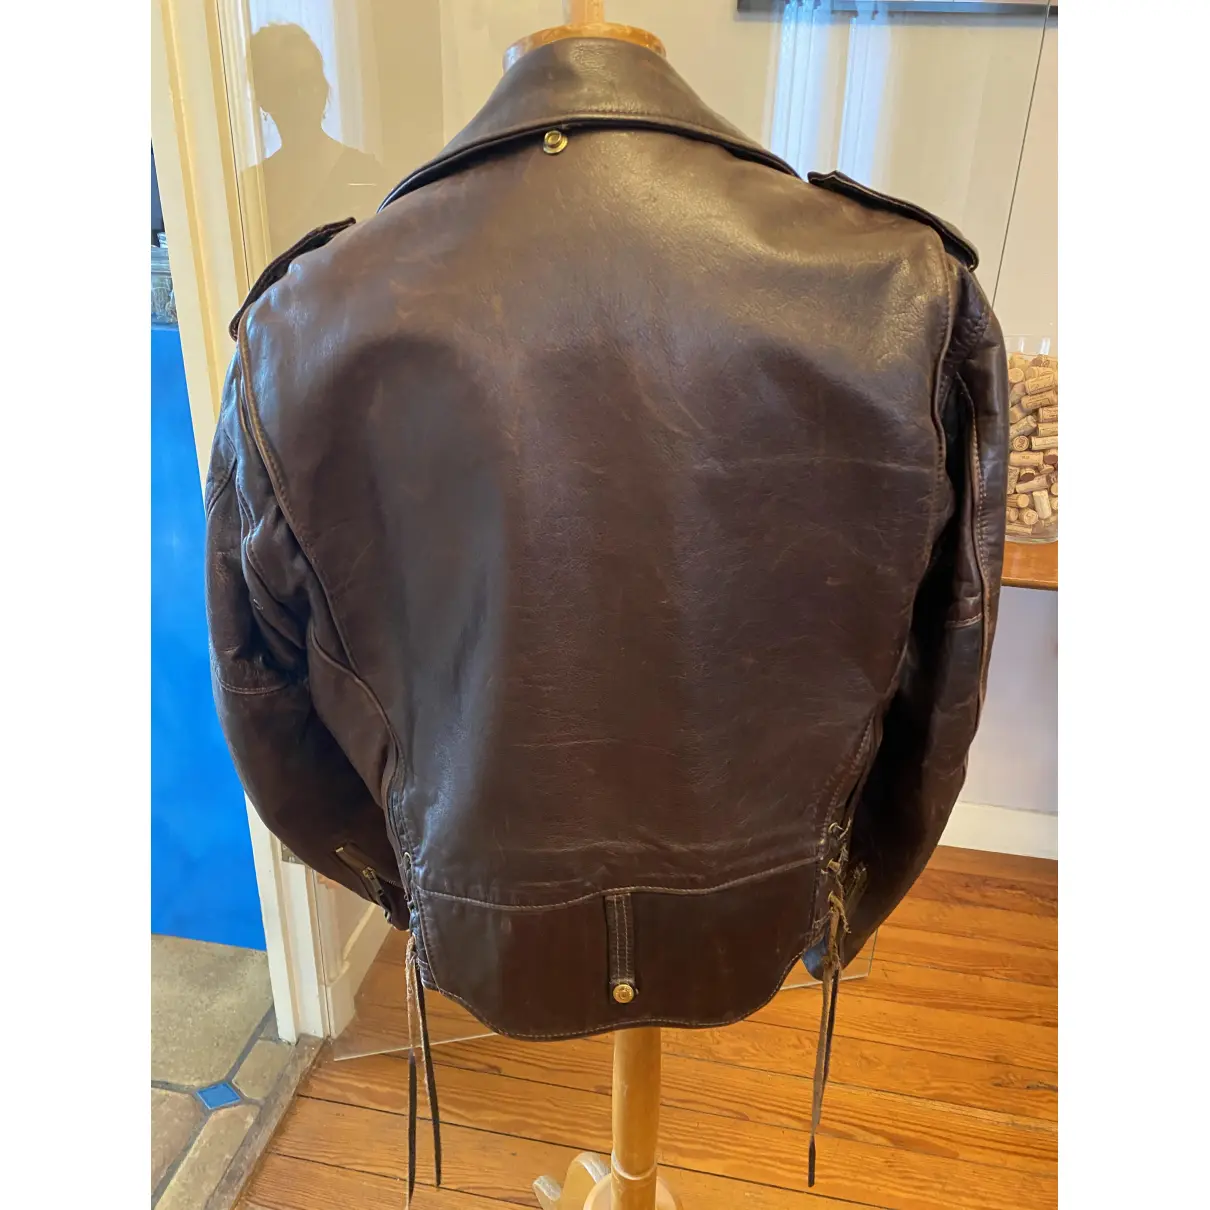 Buy Schott Leather biker jacket online